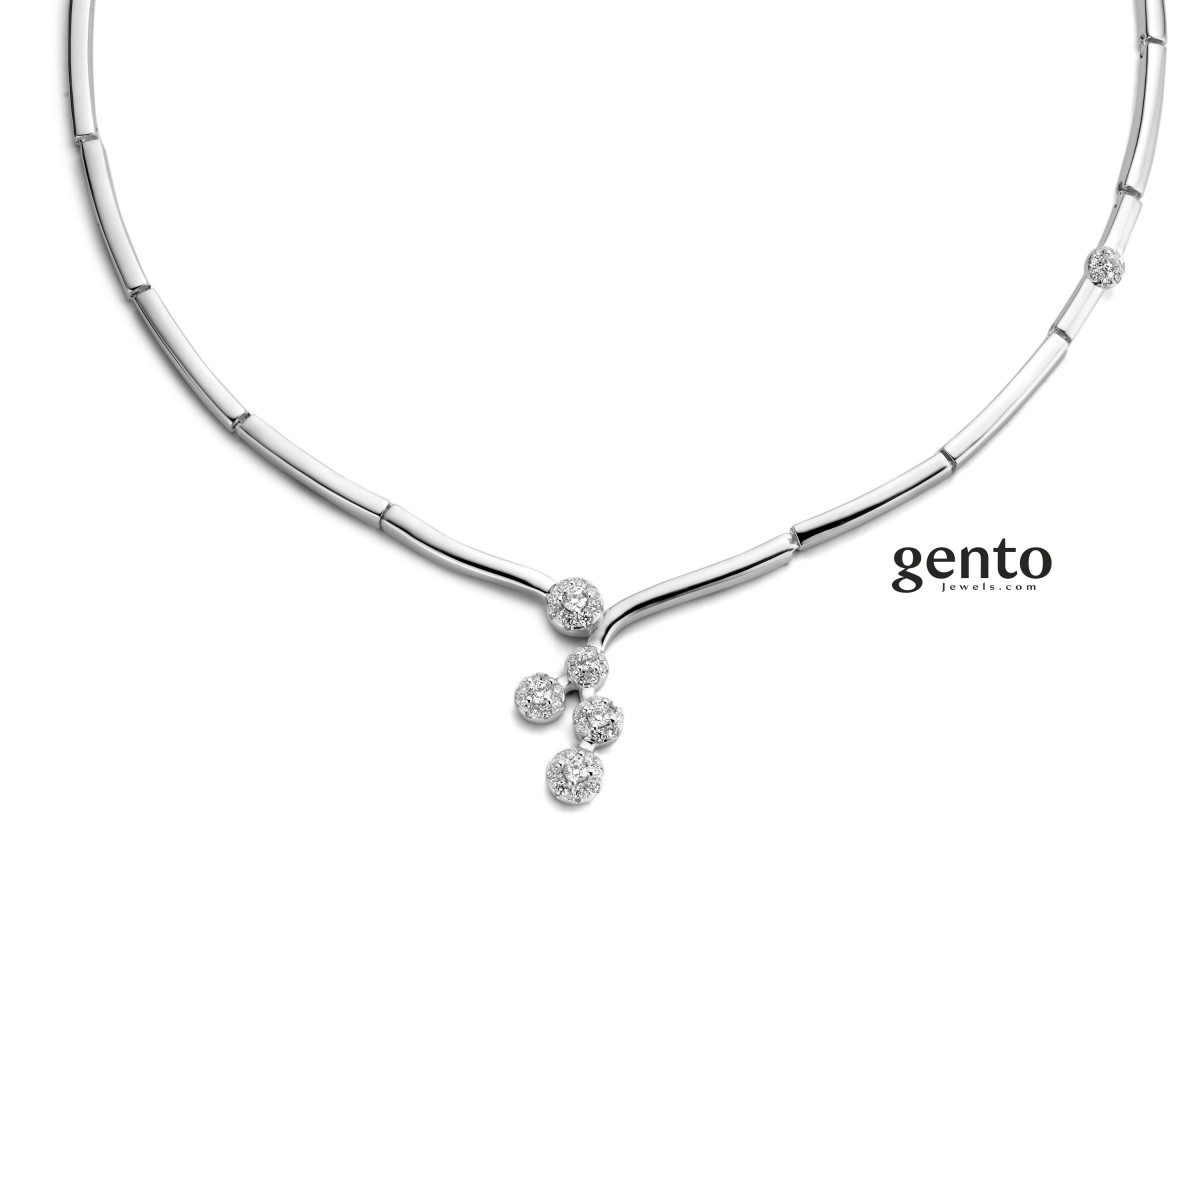 Gento jewels